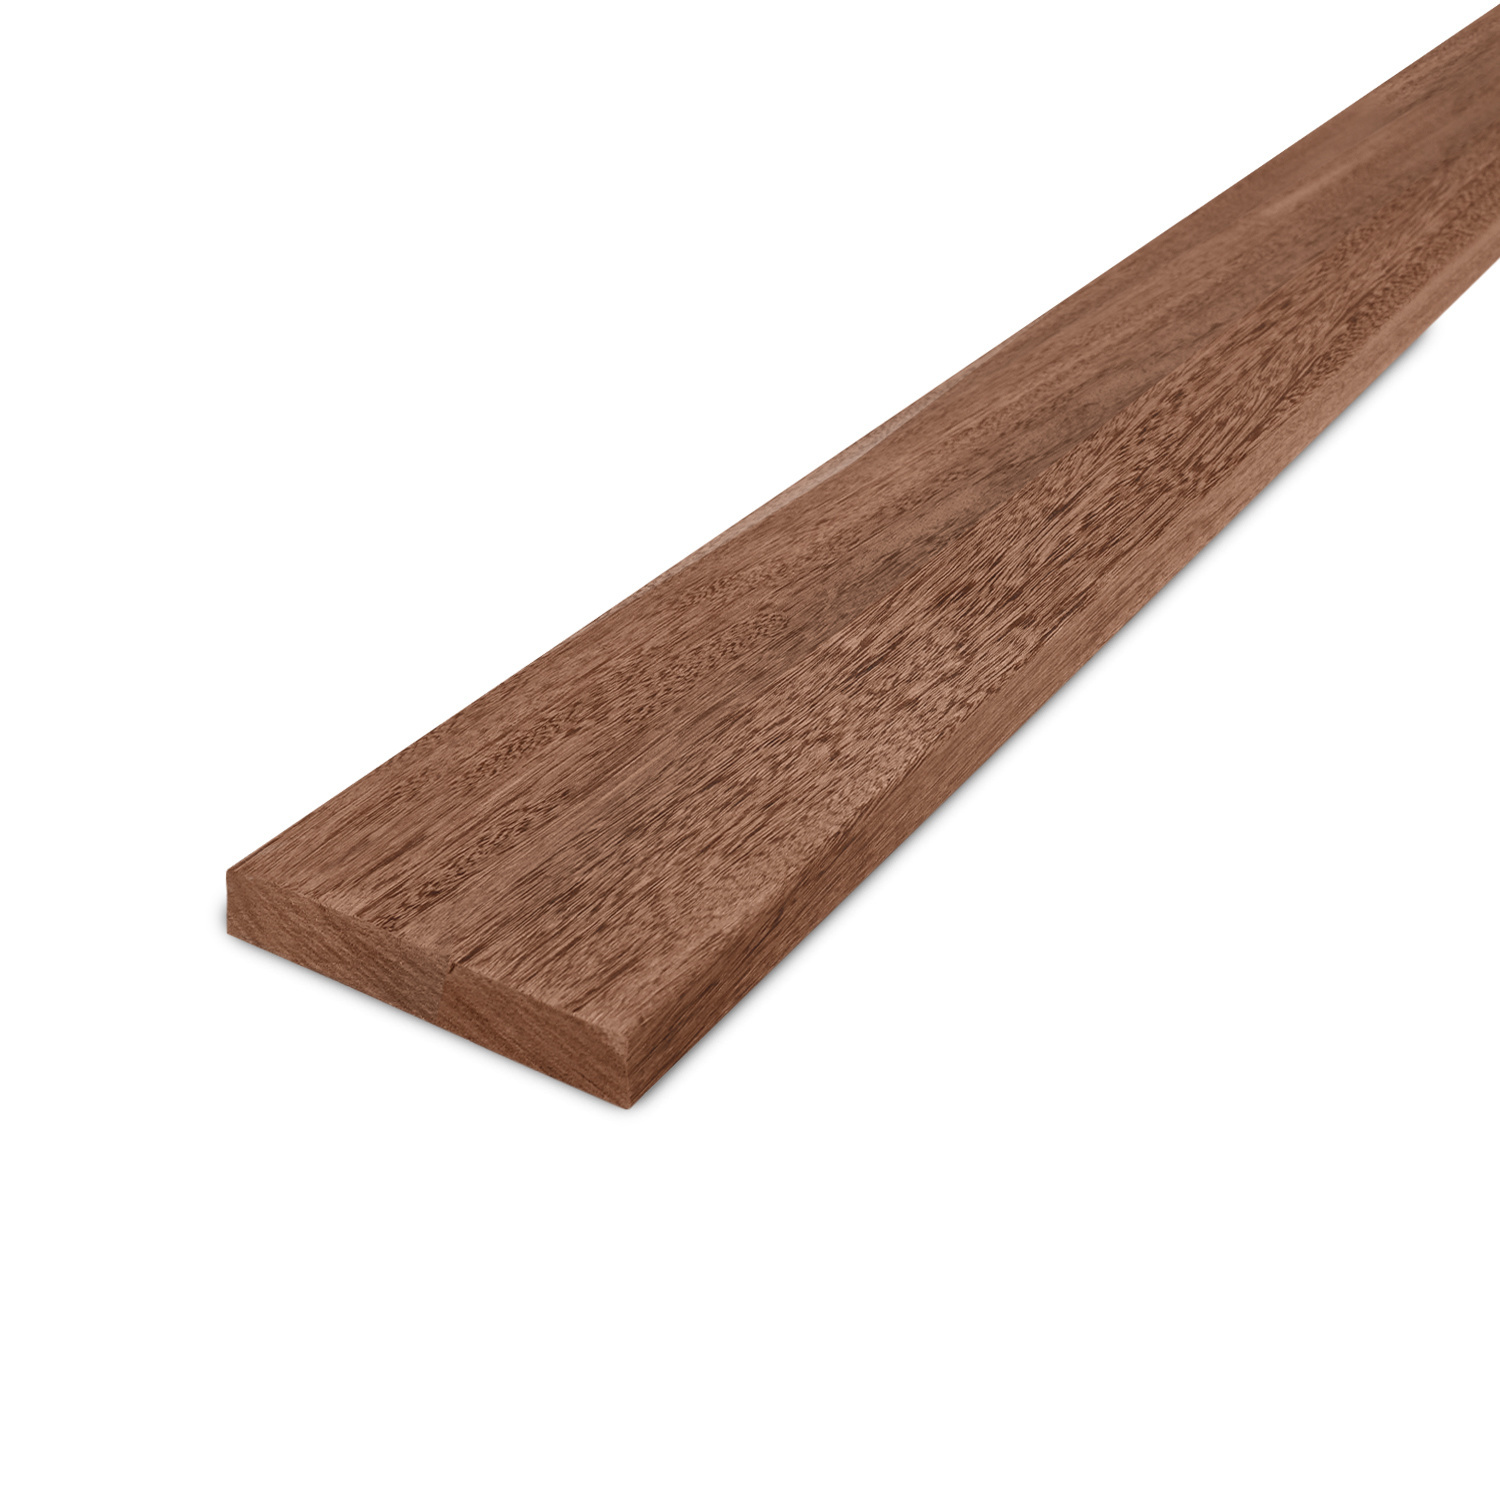  Afrormosia hardhouten plank - 21x67mm - geschaafd tropisch hardhout -  kunstmatig gedroogd (kd 18-20%)